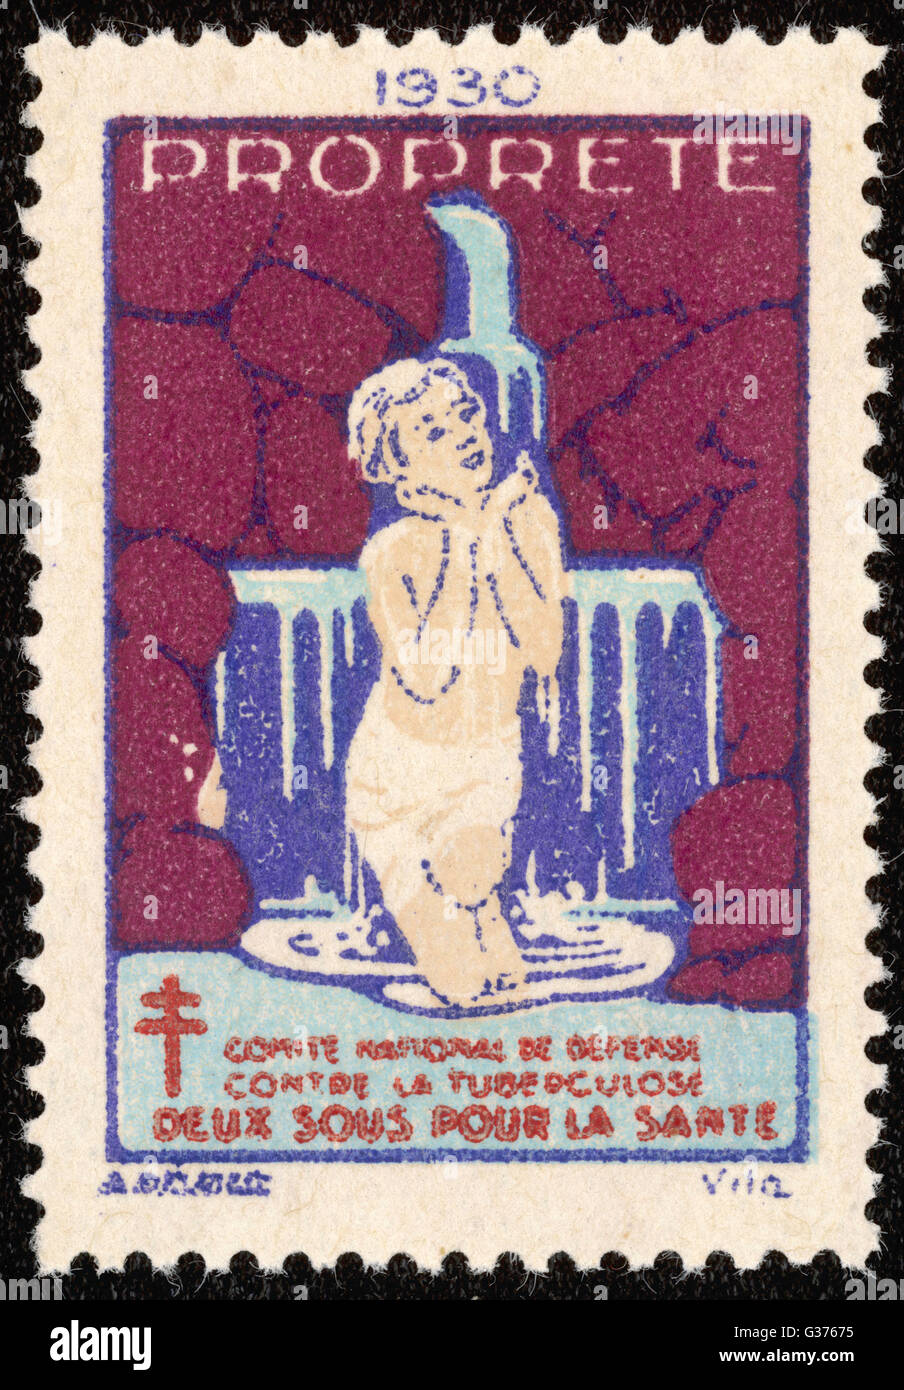 Timbre-poste français promouvoir le lavage et propreté pour lutter contre la tuberculose. Date : 1938 Banque D'Images